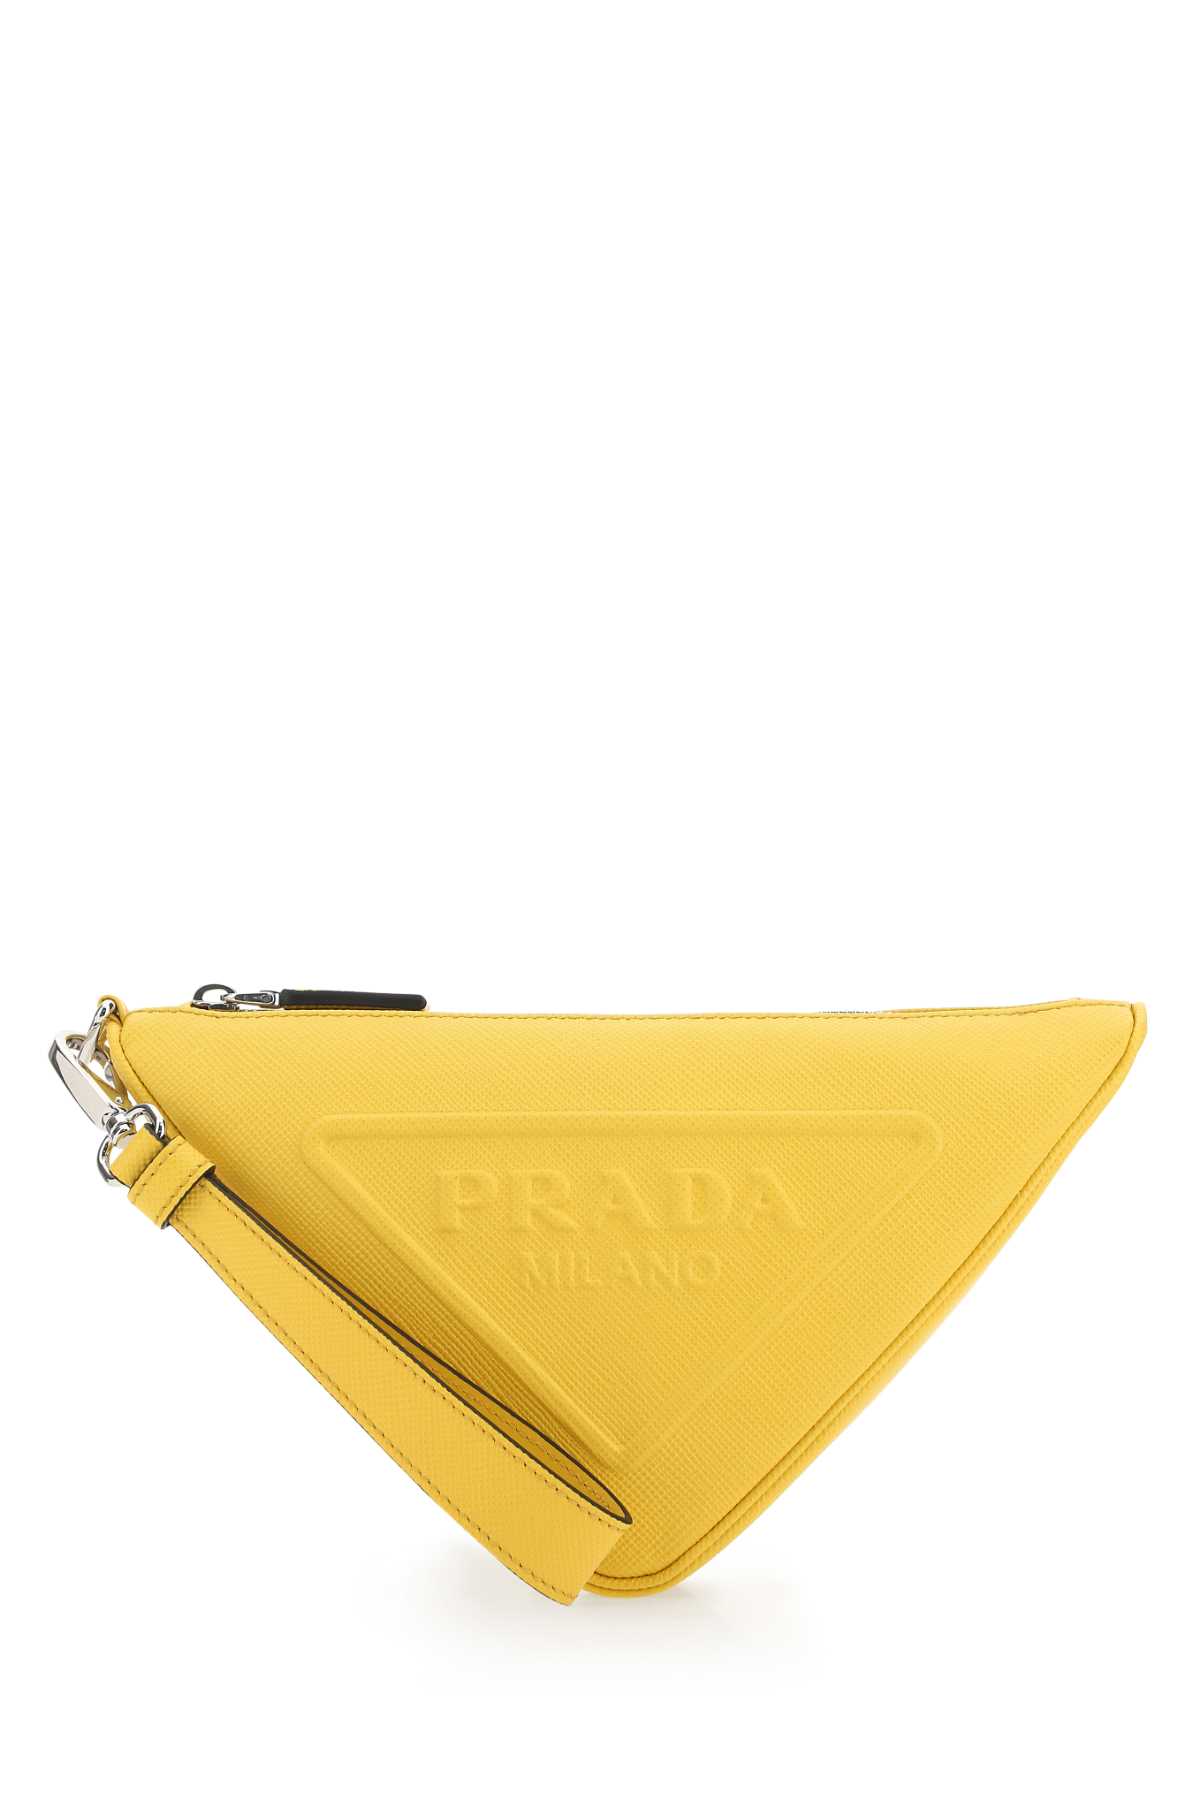 Prada Yellow Leather Triangle Clutch